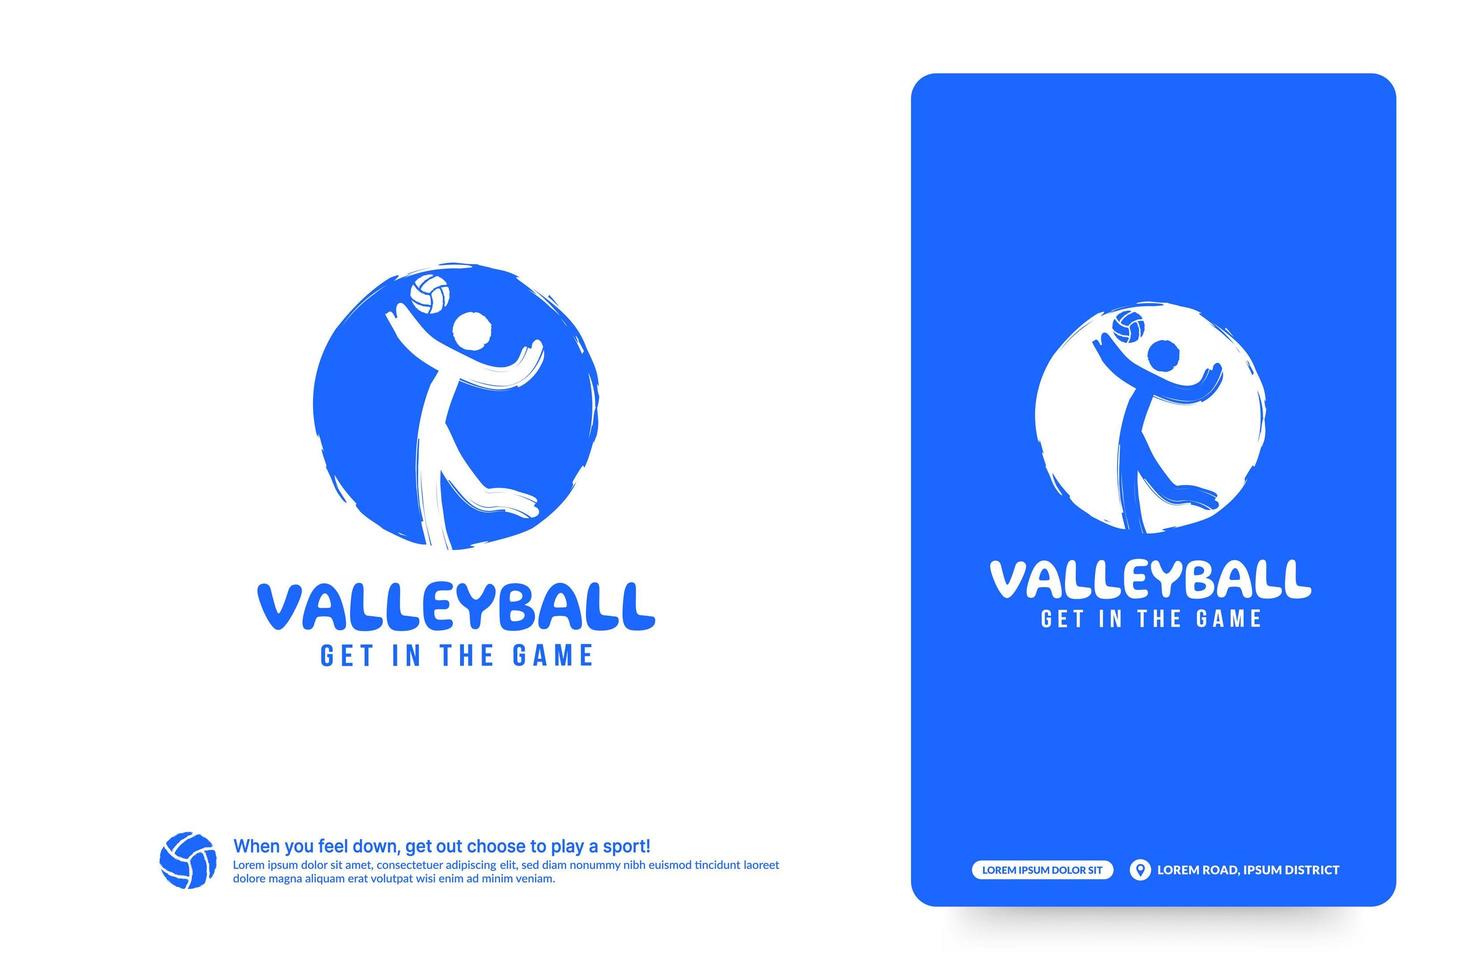 modello di progettazione del logo del club di pallavolo, concetto di logo dei tornei di volley. identità della squadra di pallavolo isolata su fondo bianco, illustrazioni di vettore di disegno di simbolo di sport astratto